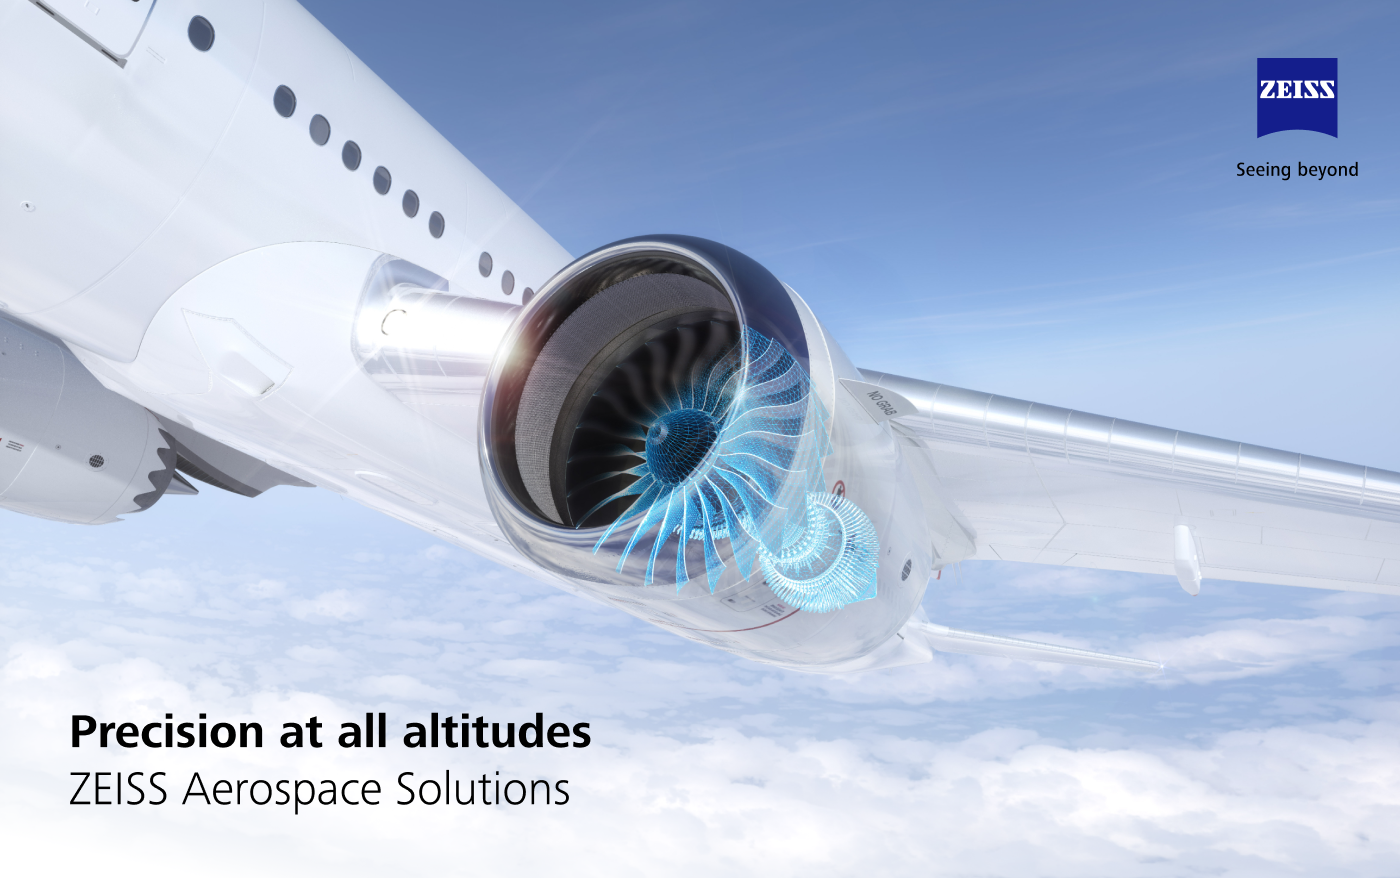 Key Visual der ZEISS Aerospace Kampagne mit Flugzeug und Turbine